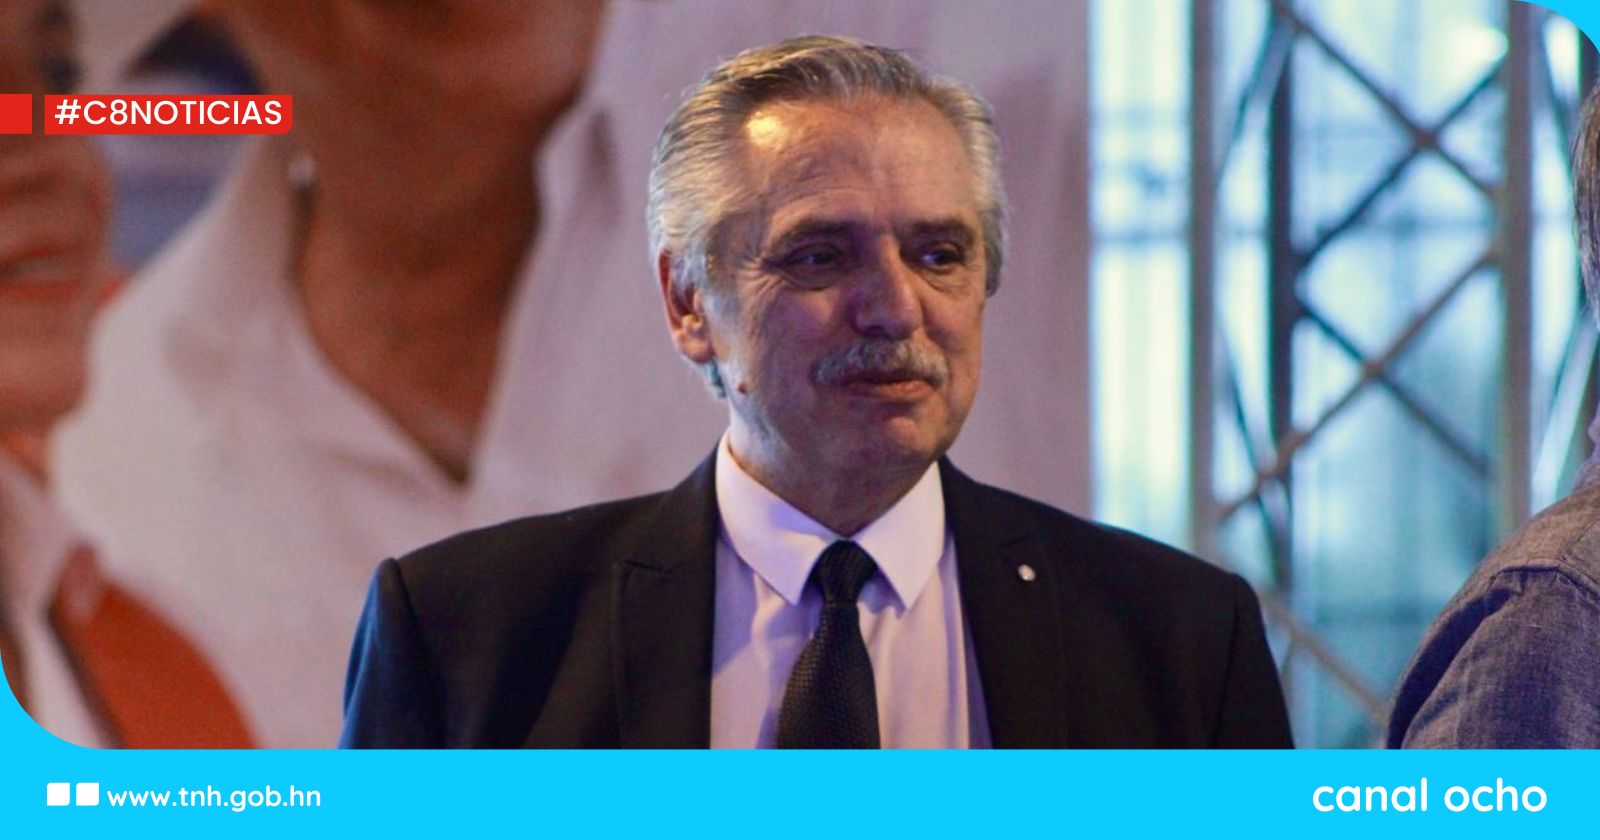 Expresidente de Argentina, Alberto Fernández, destaca importancia de la democracia y trabajo para fundar Libre